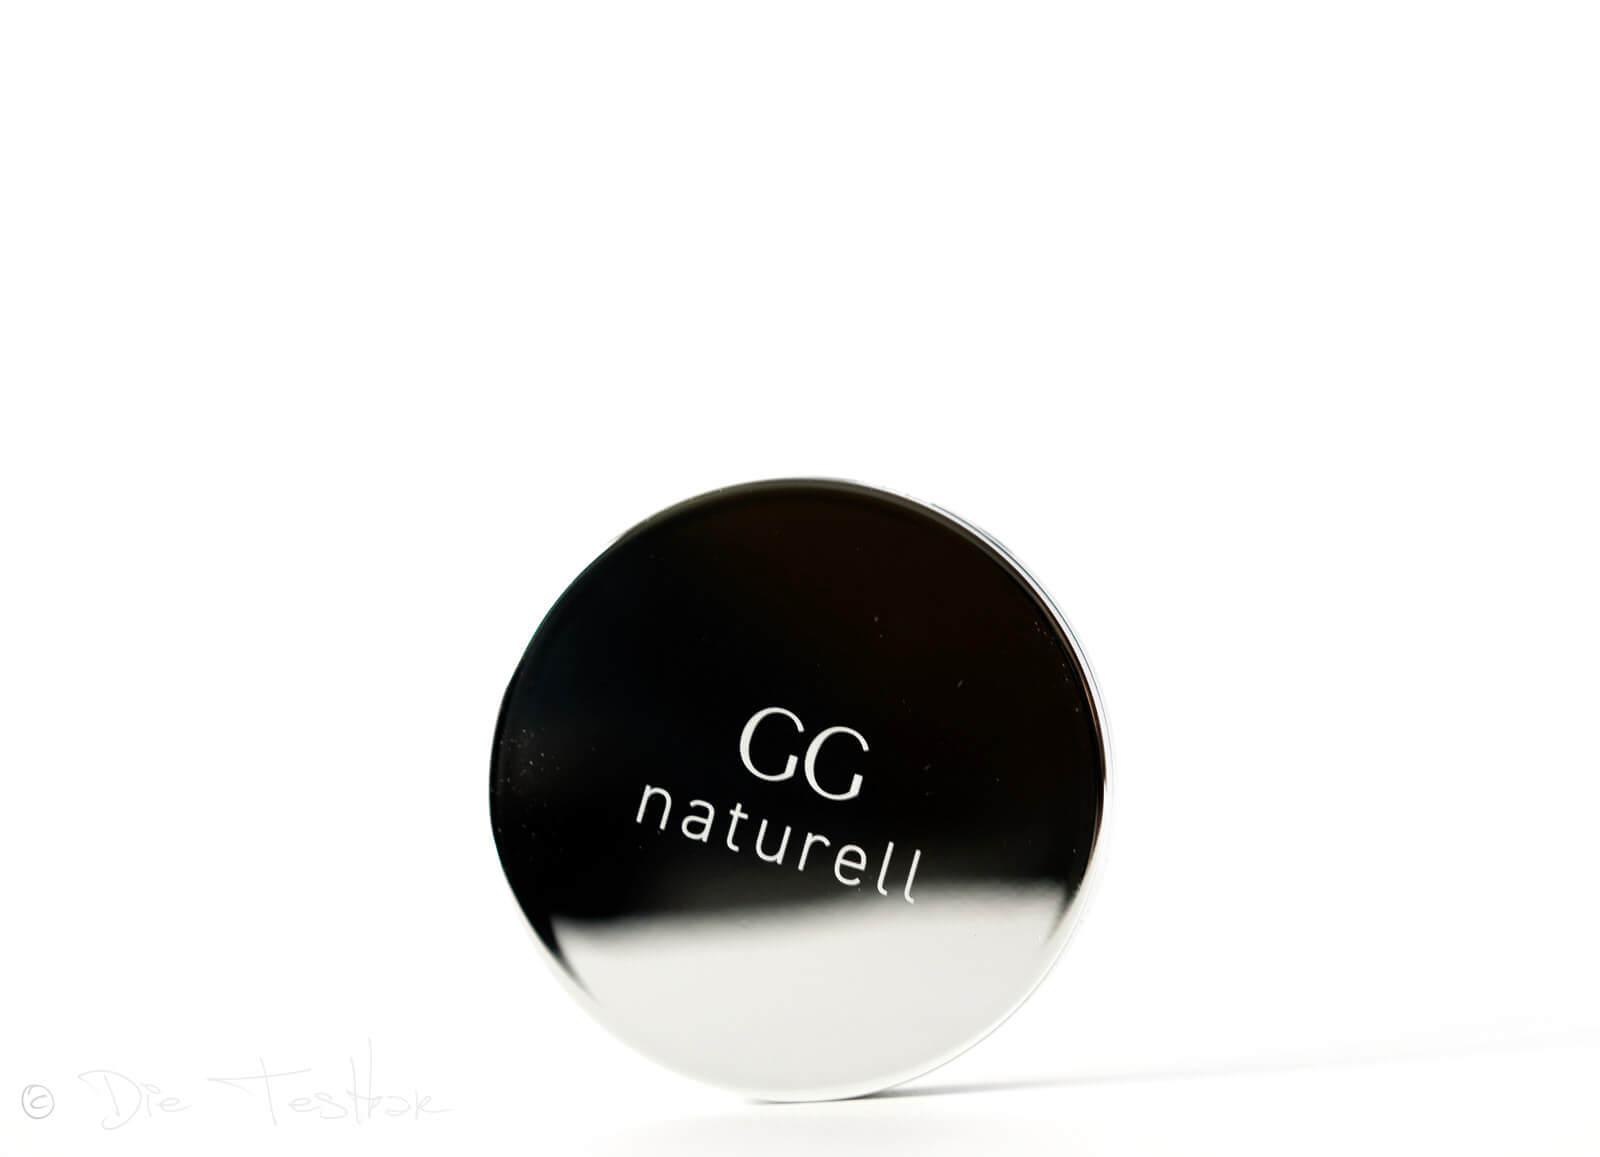 Ganzheitskosmetik - GG naturell - Hochwertige Kosmetik von Gertraud Gruber 9